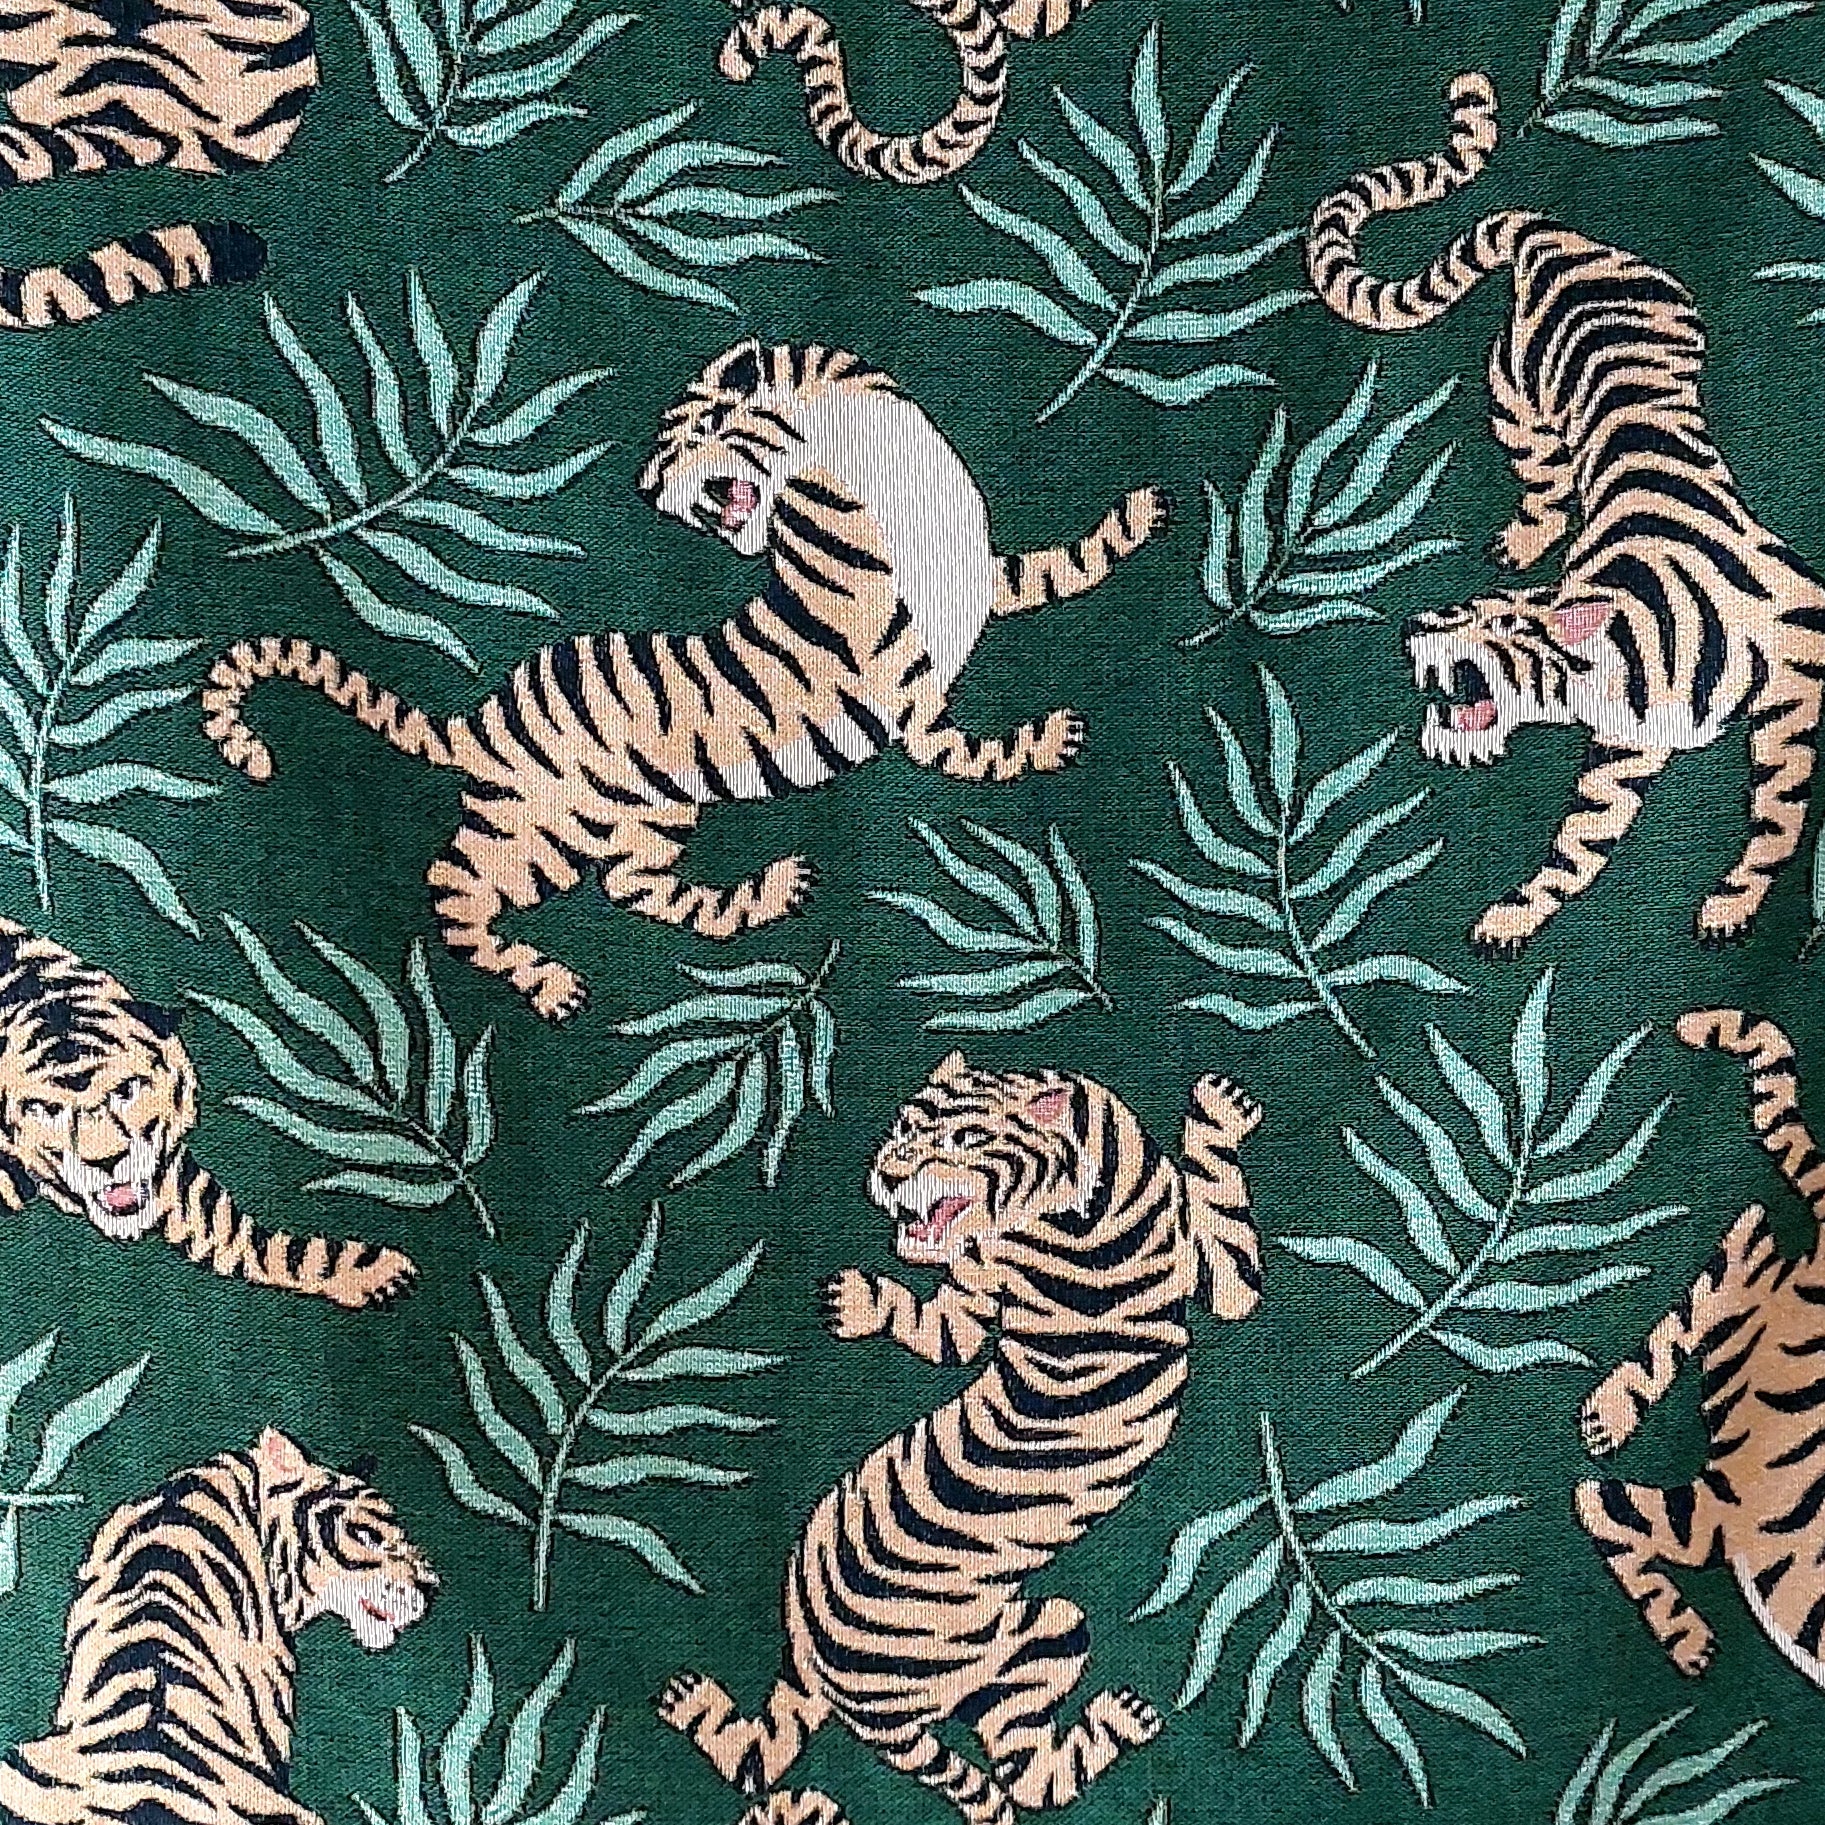 Jungle Tiger Pattern